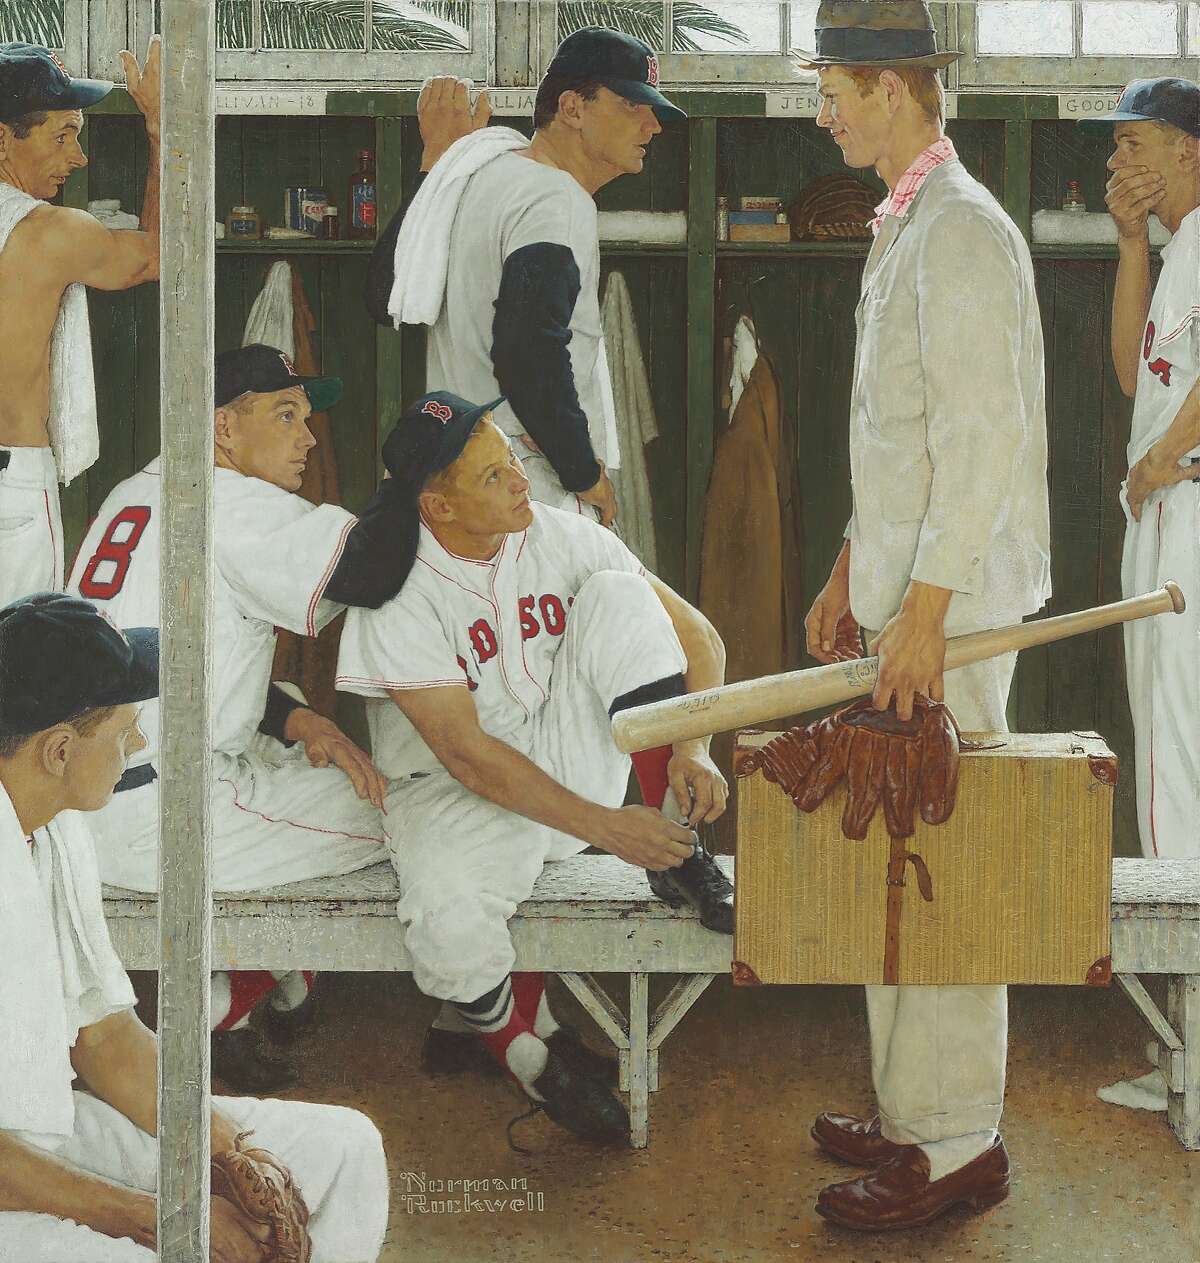 这张照片由CURTIS LICENSING通过纽约佳士得拍卖行提供，展示了诺曼·洛克威尔1957年的画作“新秀(红袜队更衣室)”。这幅画描绘了投手弗兰克·沙利文、右外野手杰基·詹森和接球手萨米·怀特、二垒手比利·古德曼和名人堂成员泰德·威廉姆斯。这幅画将于5月22日在佳士得拍卖，预售估价为2000万至3000万美元。(美联社图片/Curtis Licensing)强制性学分